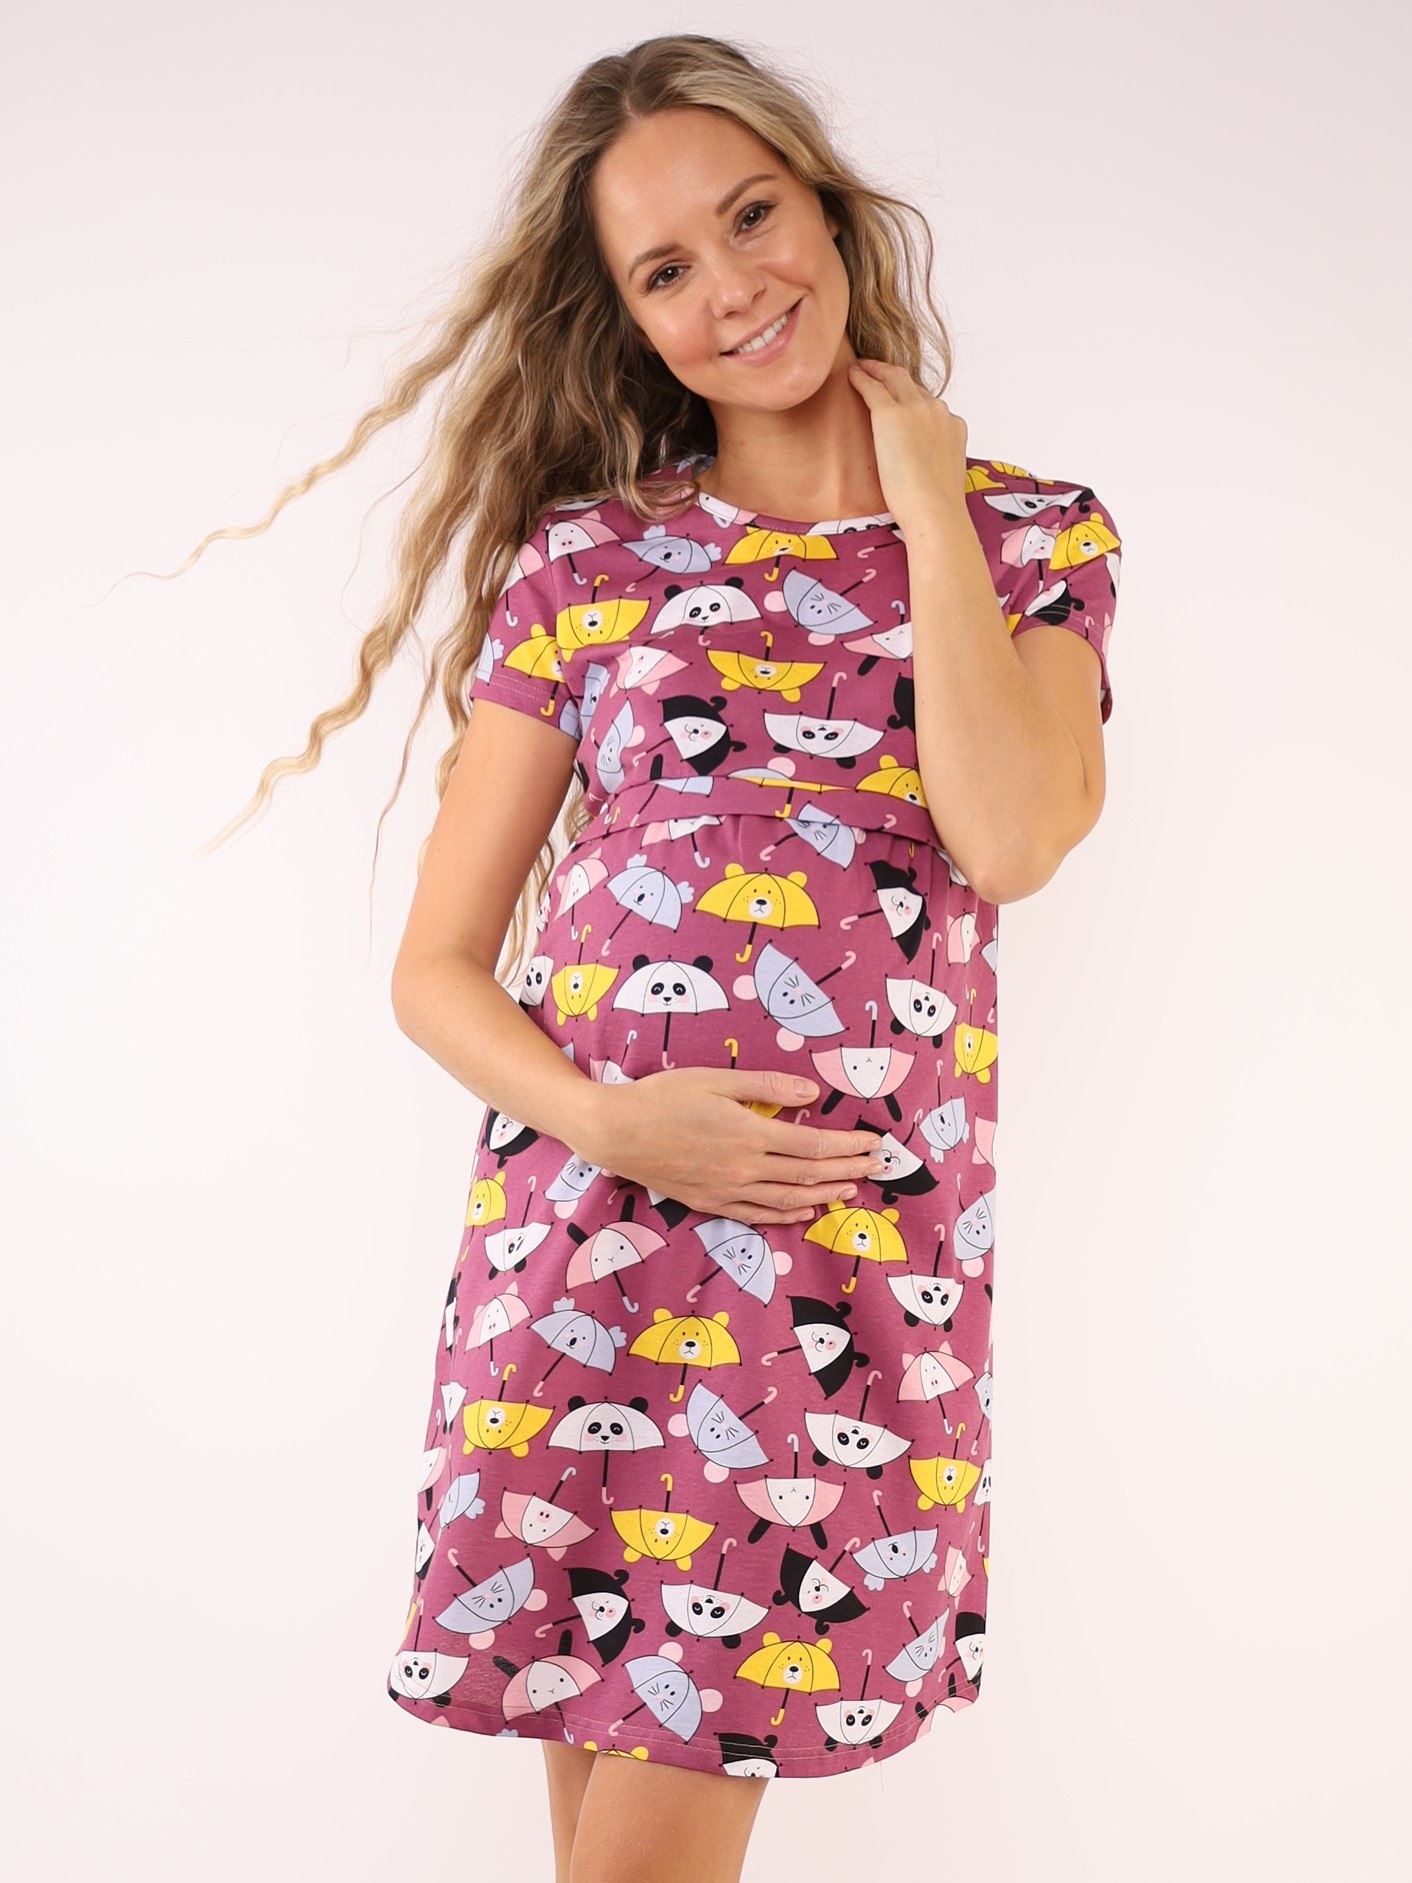 Сорочка для беременных и кормящих (домашнее платье) арт. 360360 зонтики